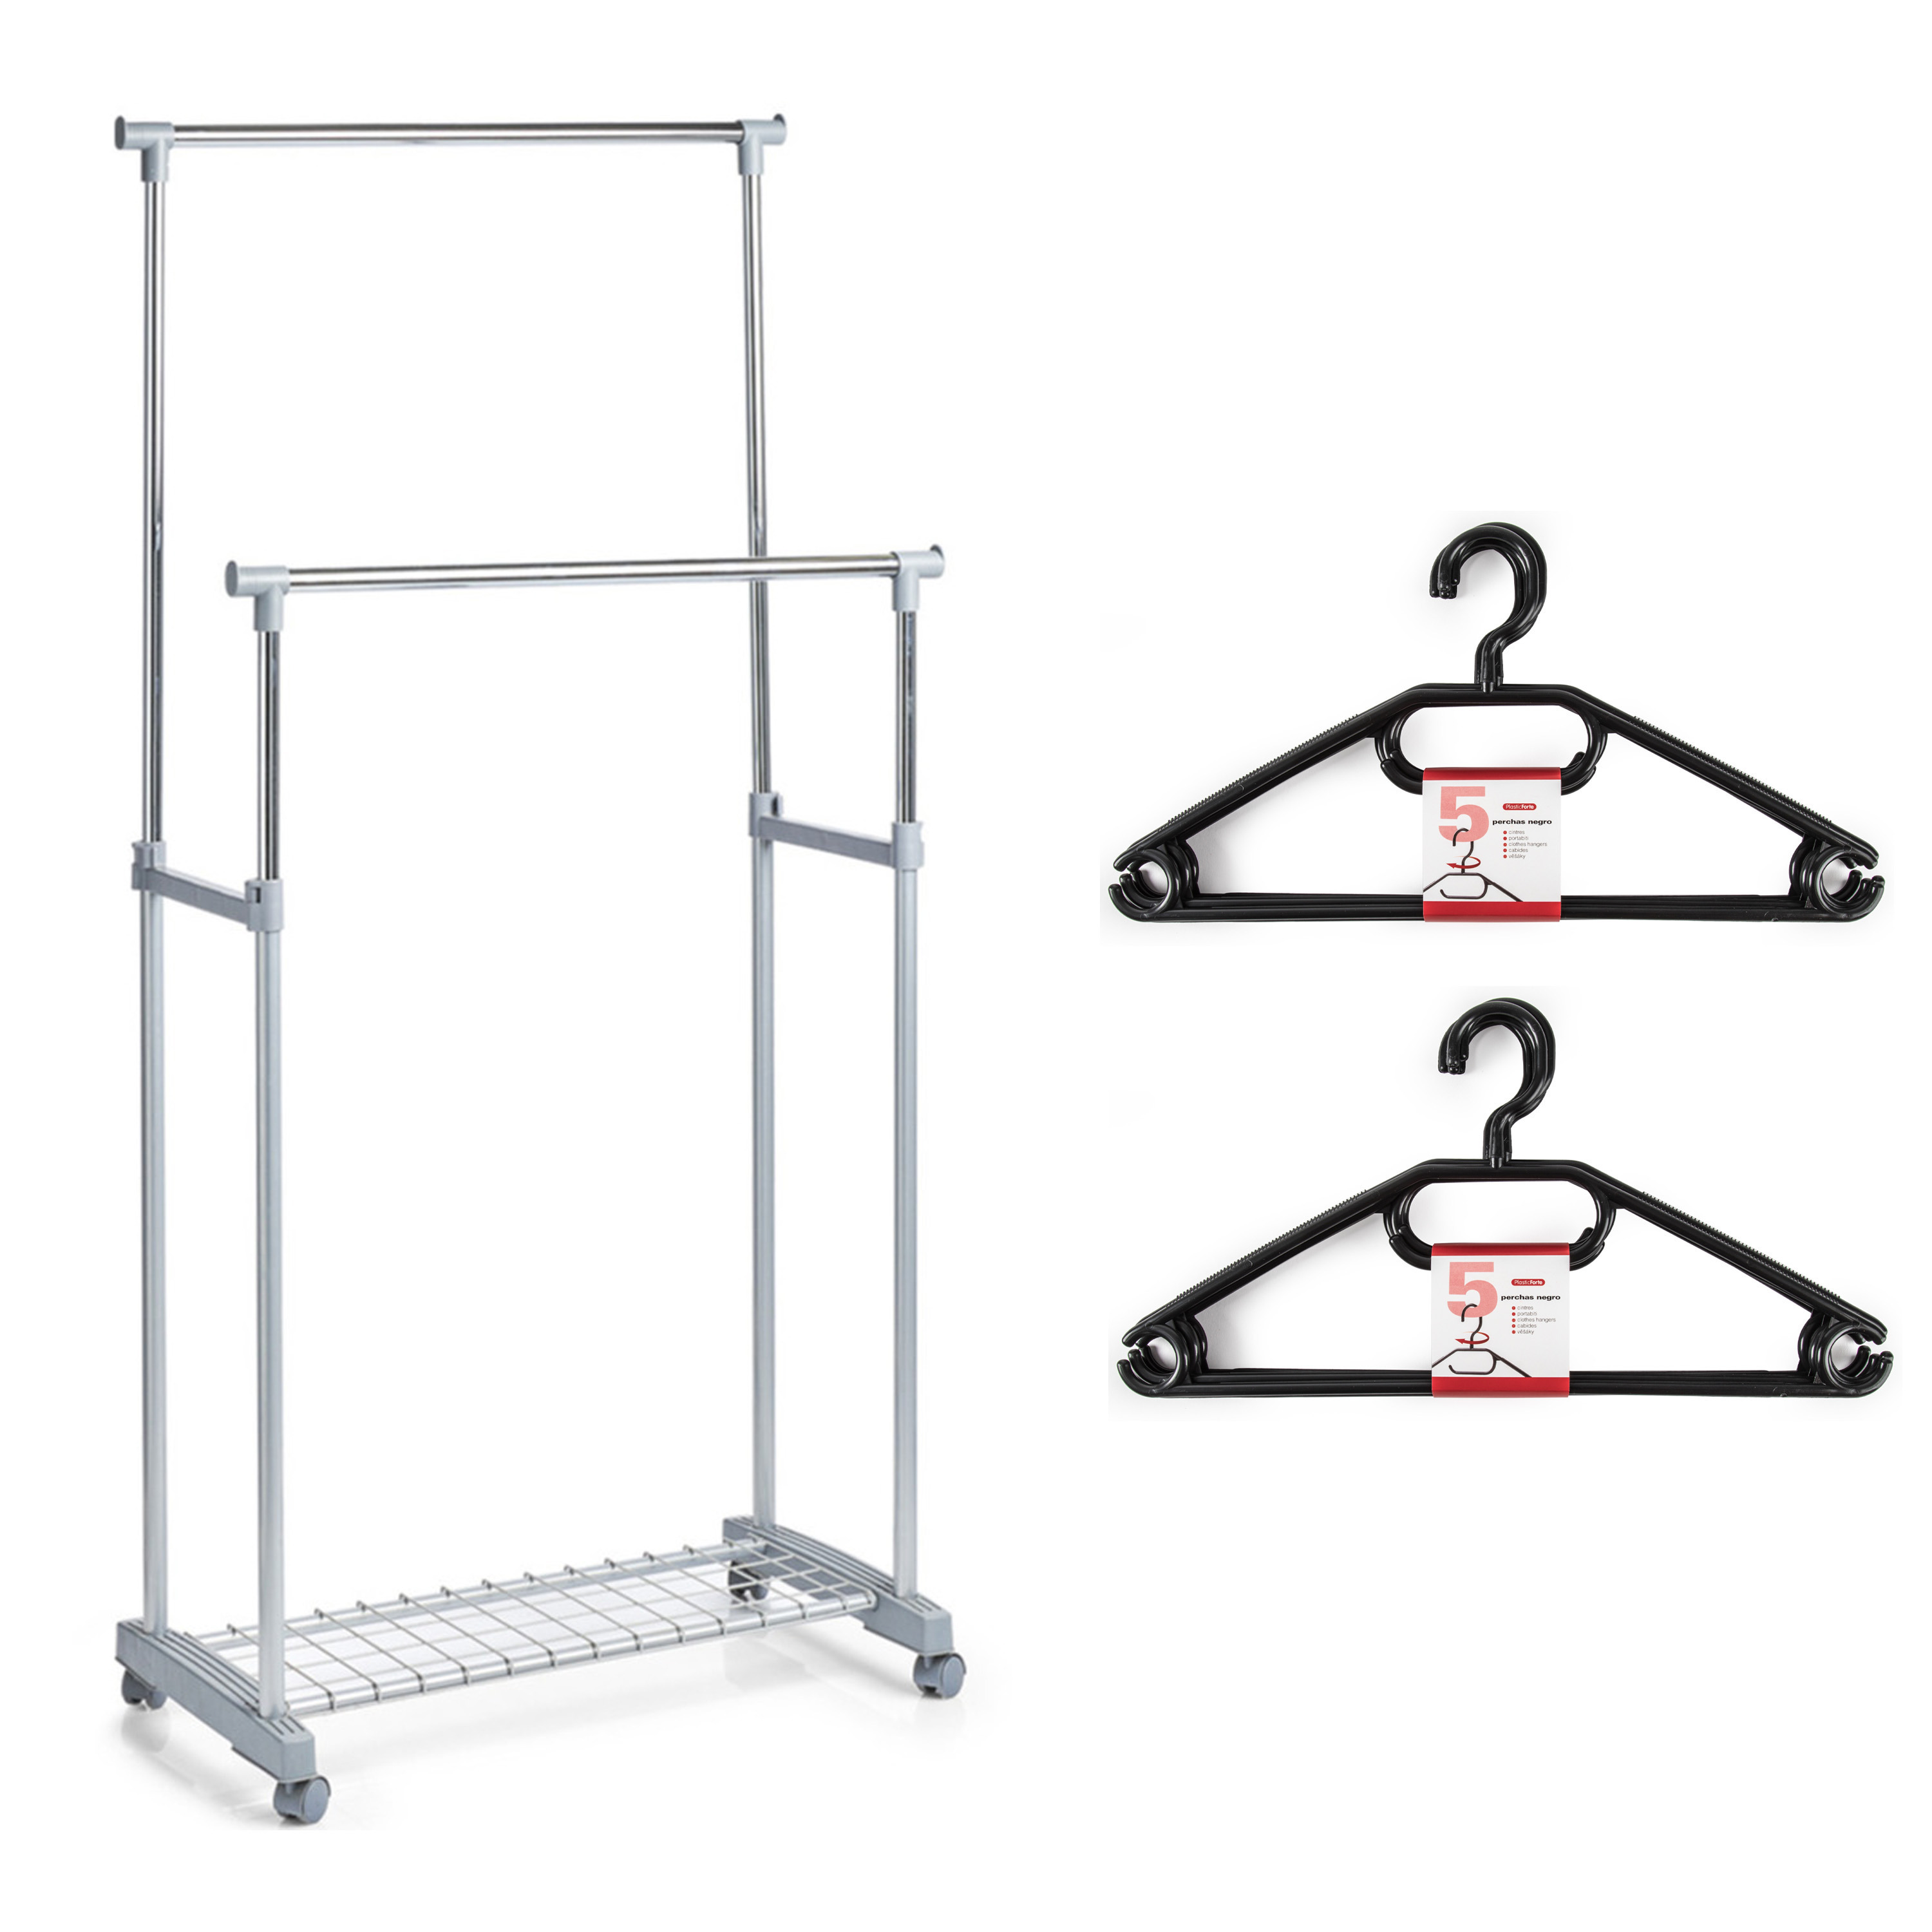 Kledingrek met kleding hangers dubbele stang kunststof-metaal grijs 83 x 43 x 107